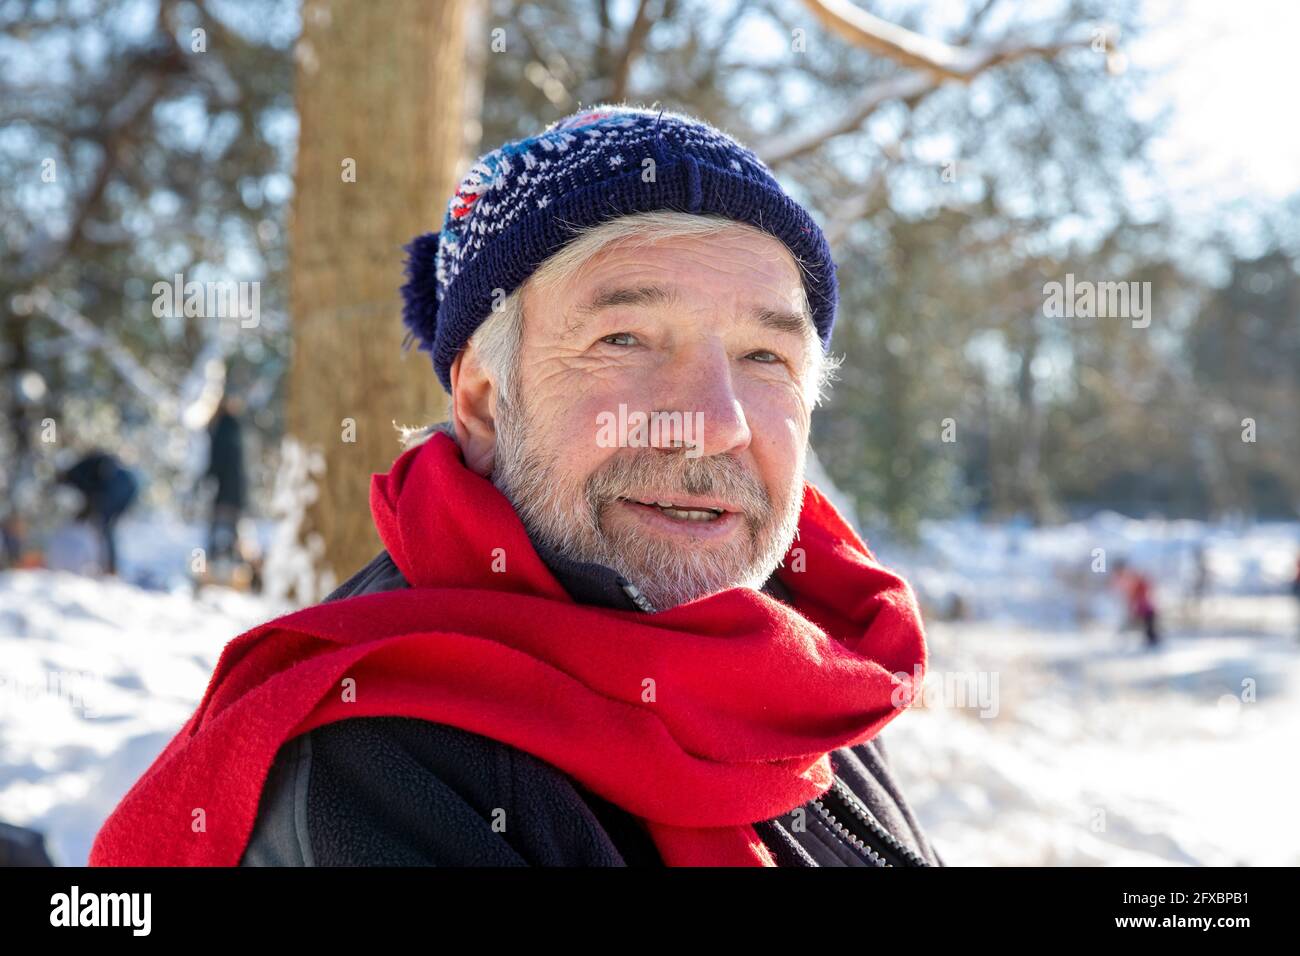 Senior man wearing red scarf during winter Stock Photo